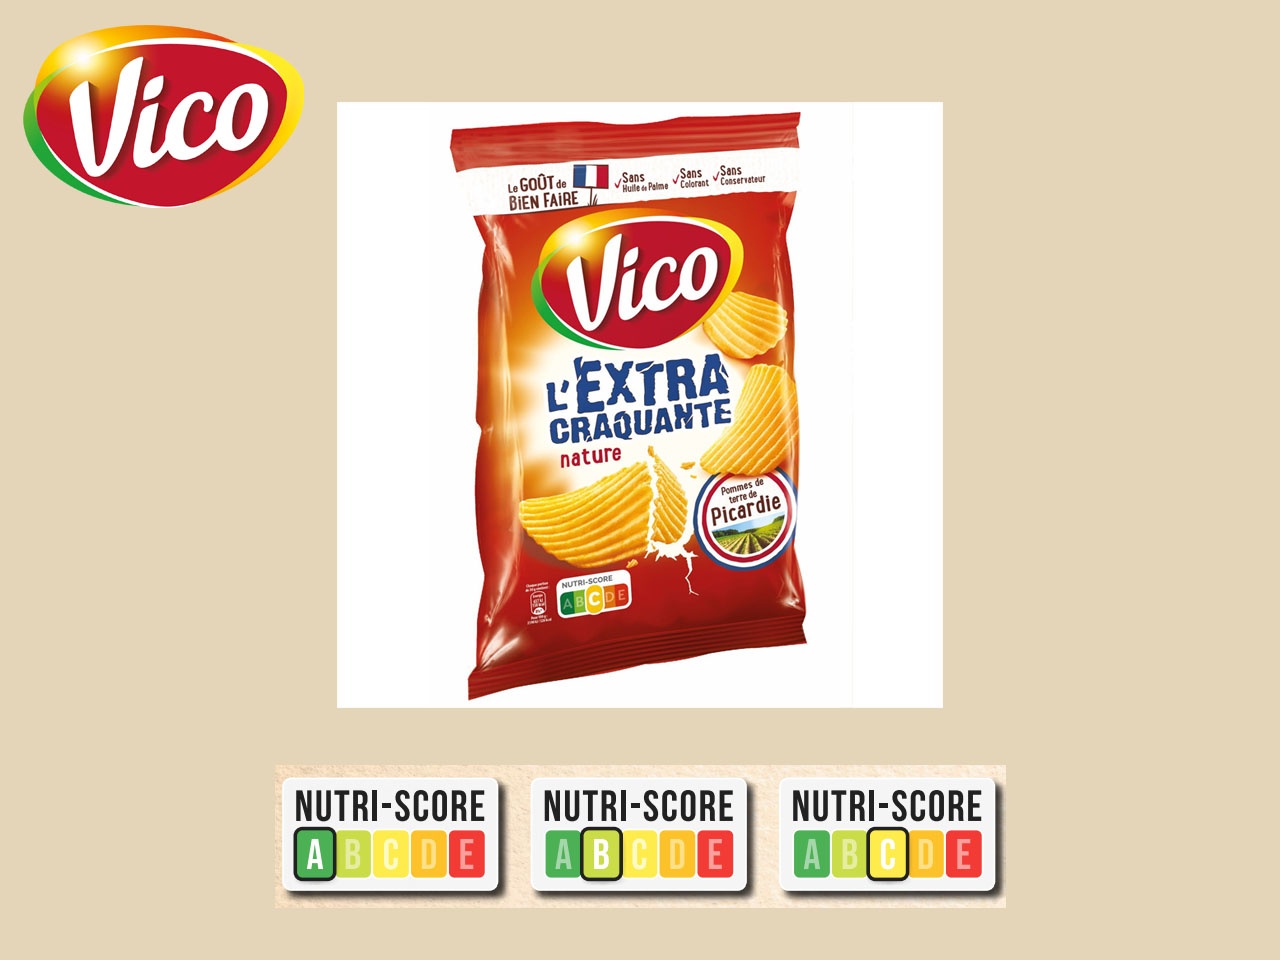 Vico affiche en toute transparence le Nutri-Score sur ses packs